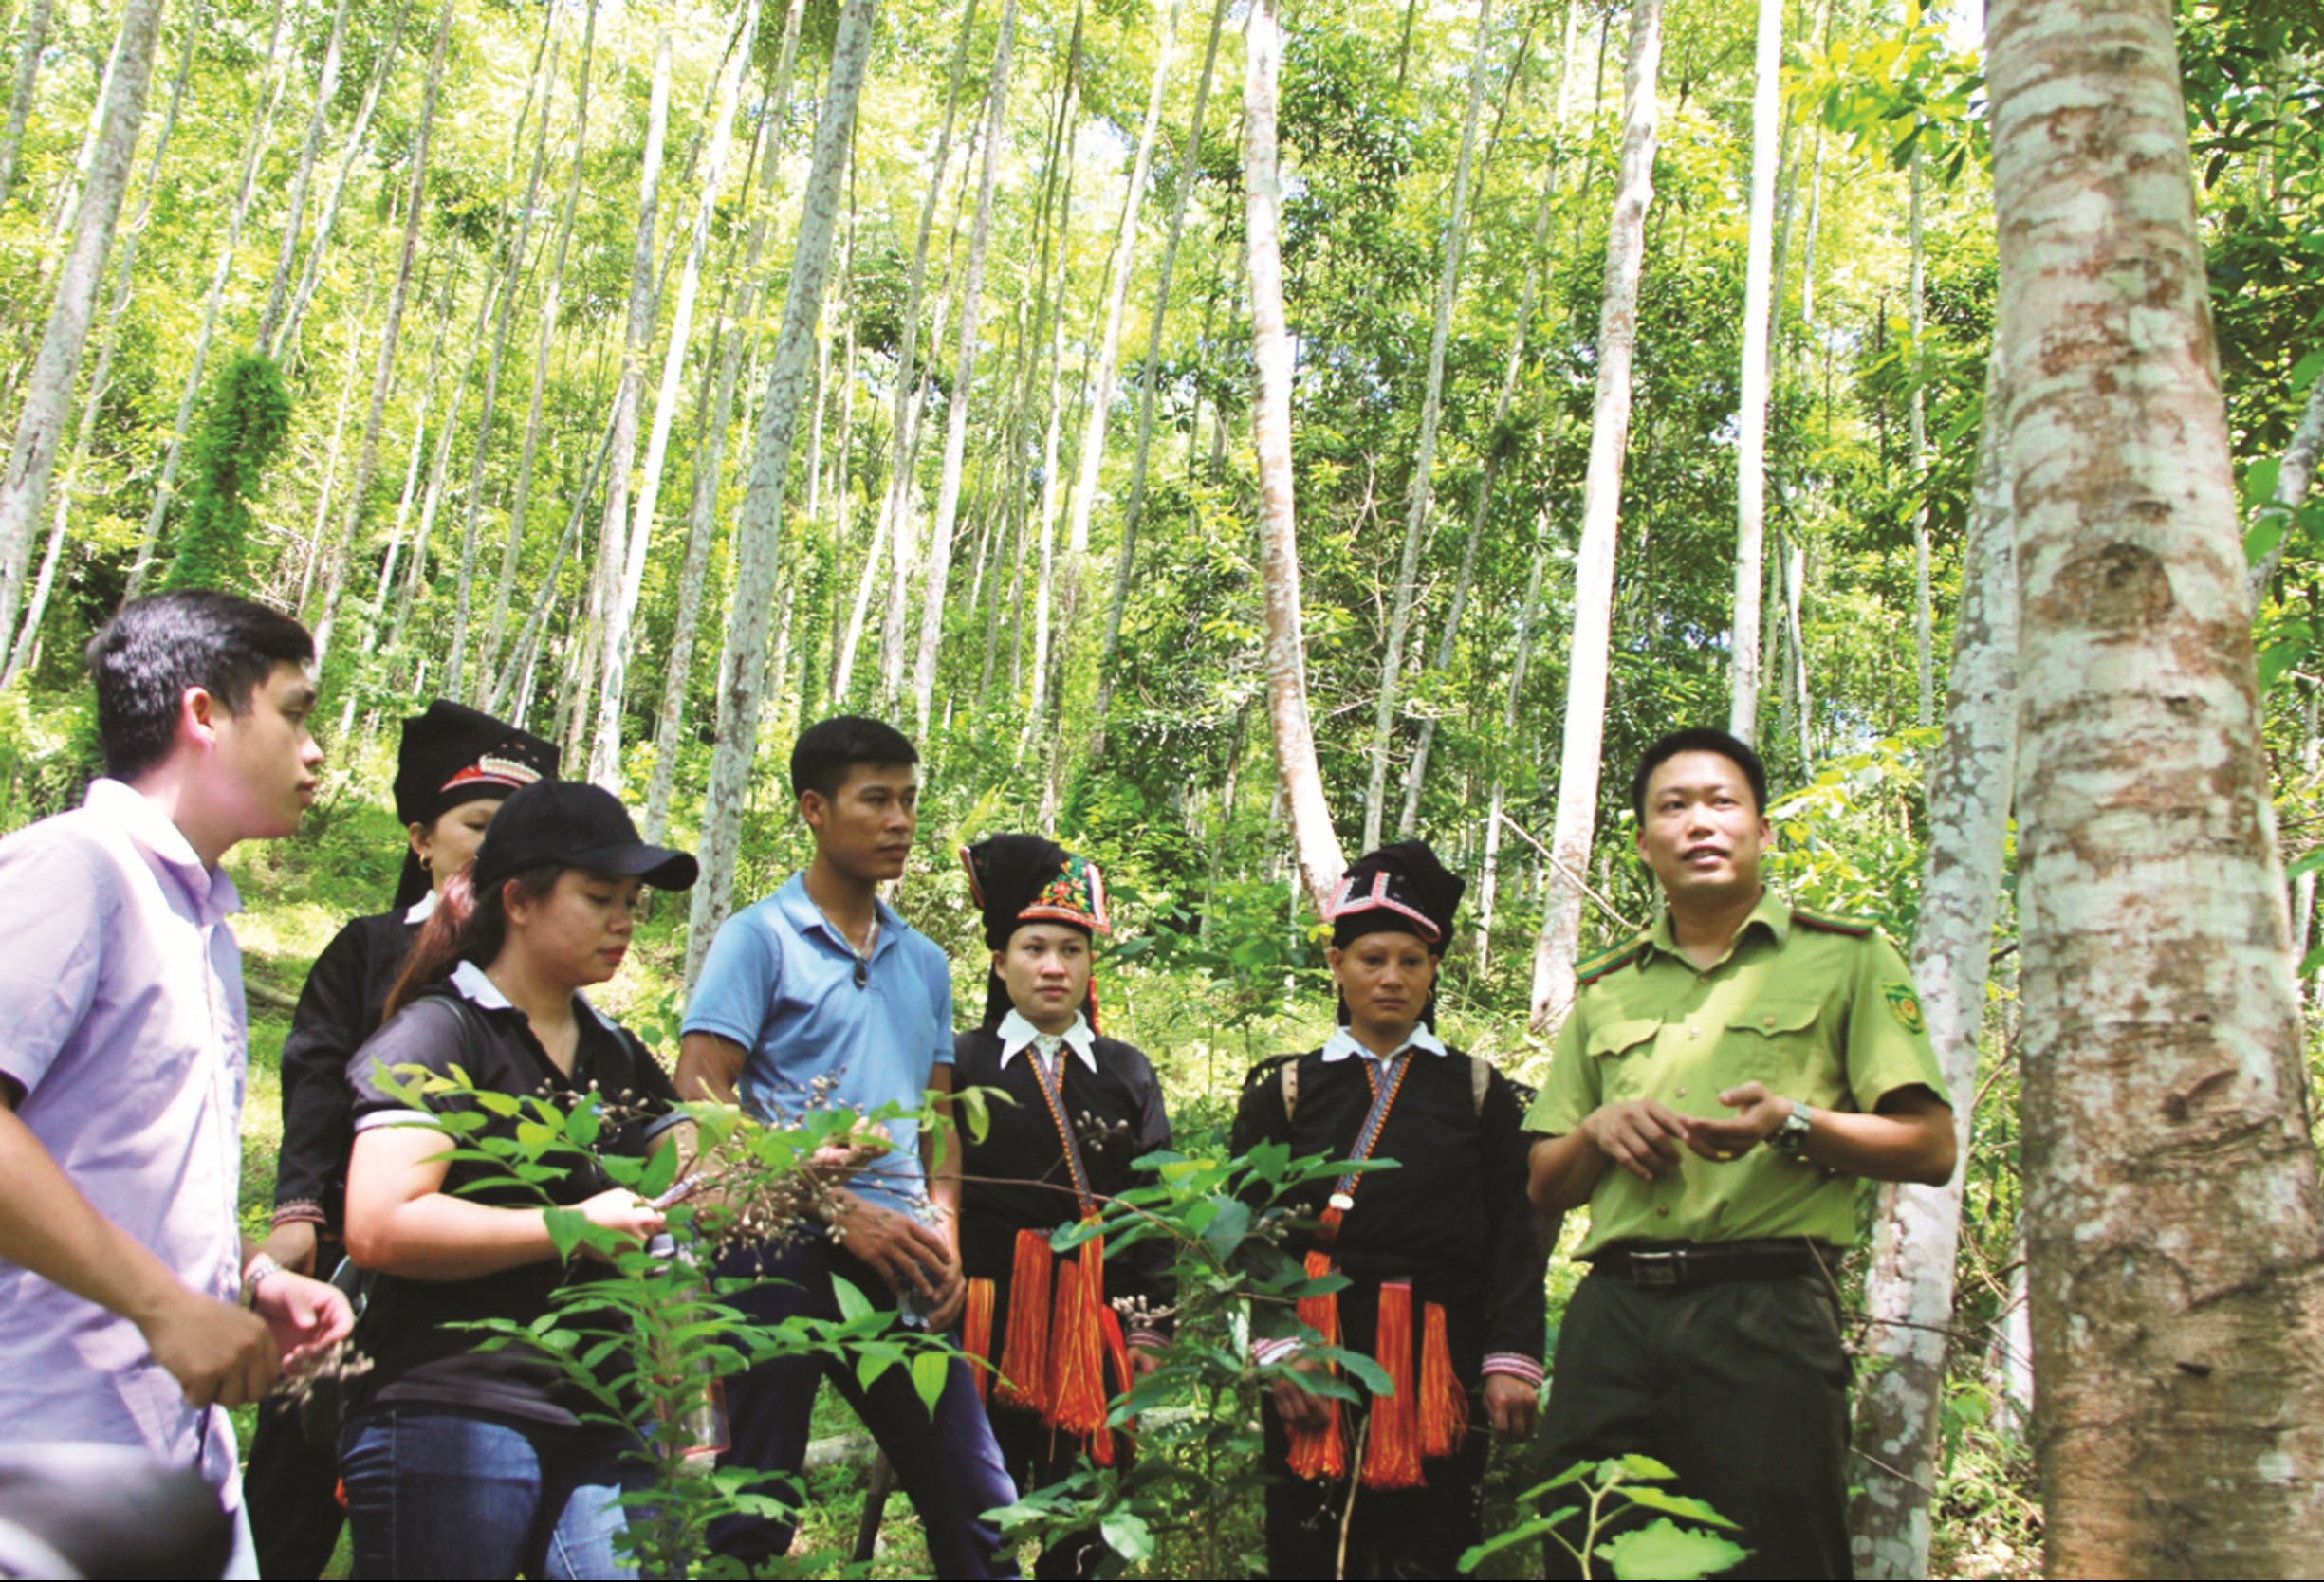 Cán bộ Kiểm lâm đồng hành cùng người dân hướng dẫn chăm sóc, thu hoạch, bảo vệ tài nguyên rừng. Ảnh: Đăng Thy.